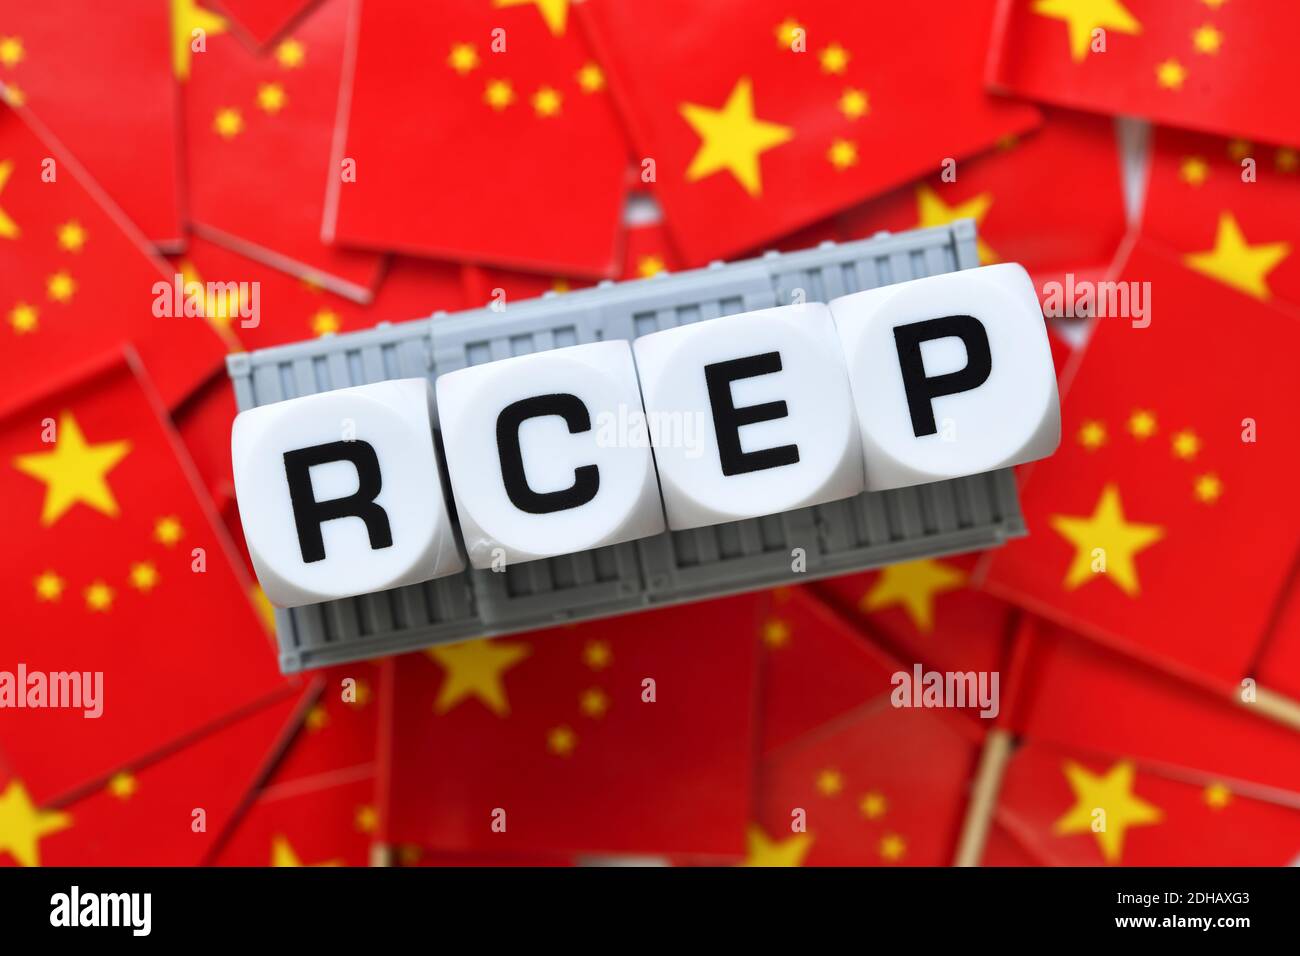 Schriftzug RCEP auf Fahnen der Volksrepublik China, asiatisches RCEP-Freihandelsabkommen Stock Photo